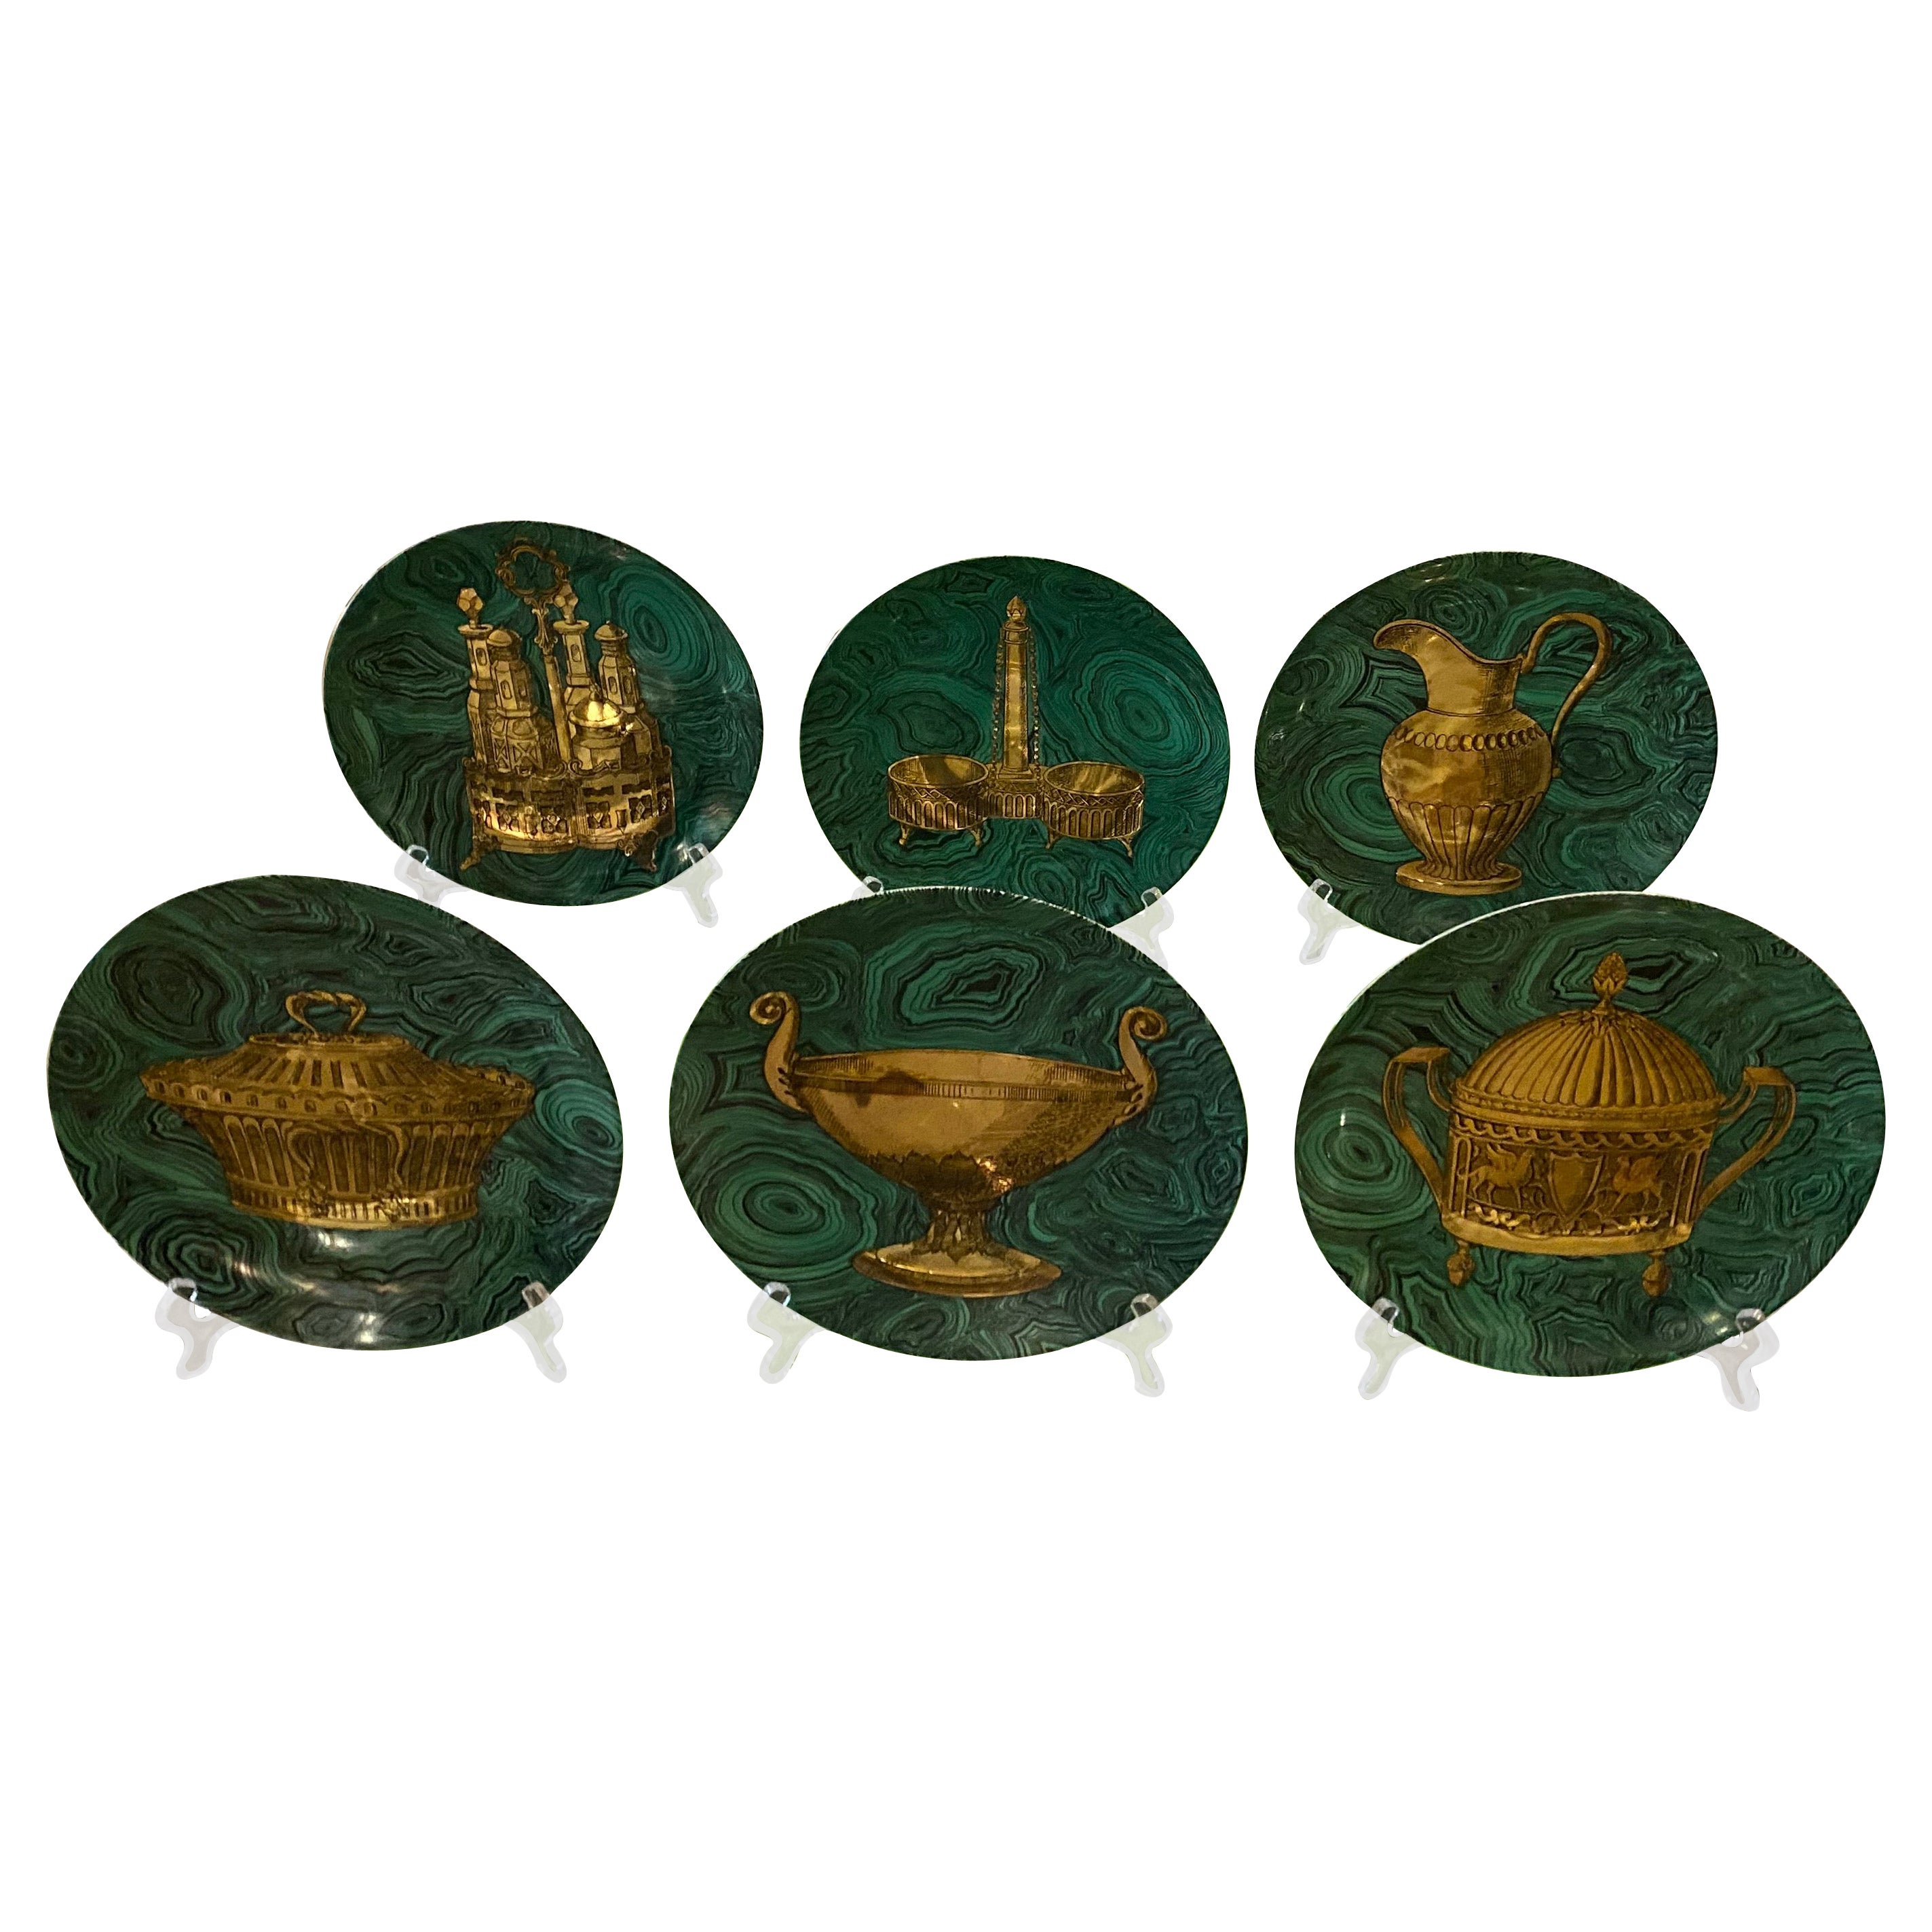 Vintage 1955 Piero Fornasetti Set of 6 Malachite Green & Gold Plates